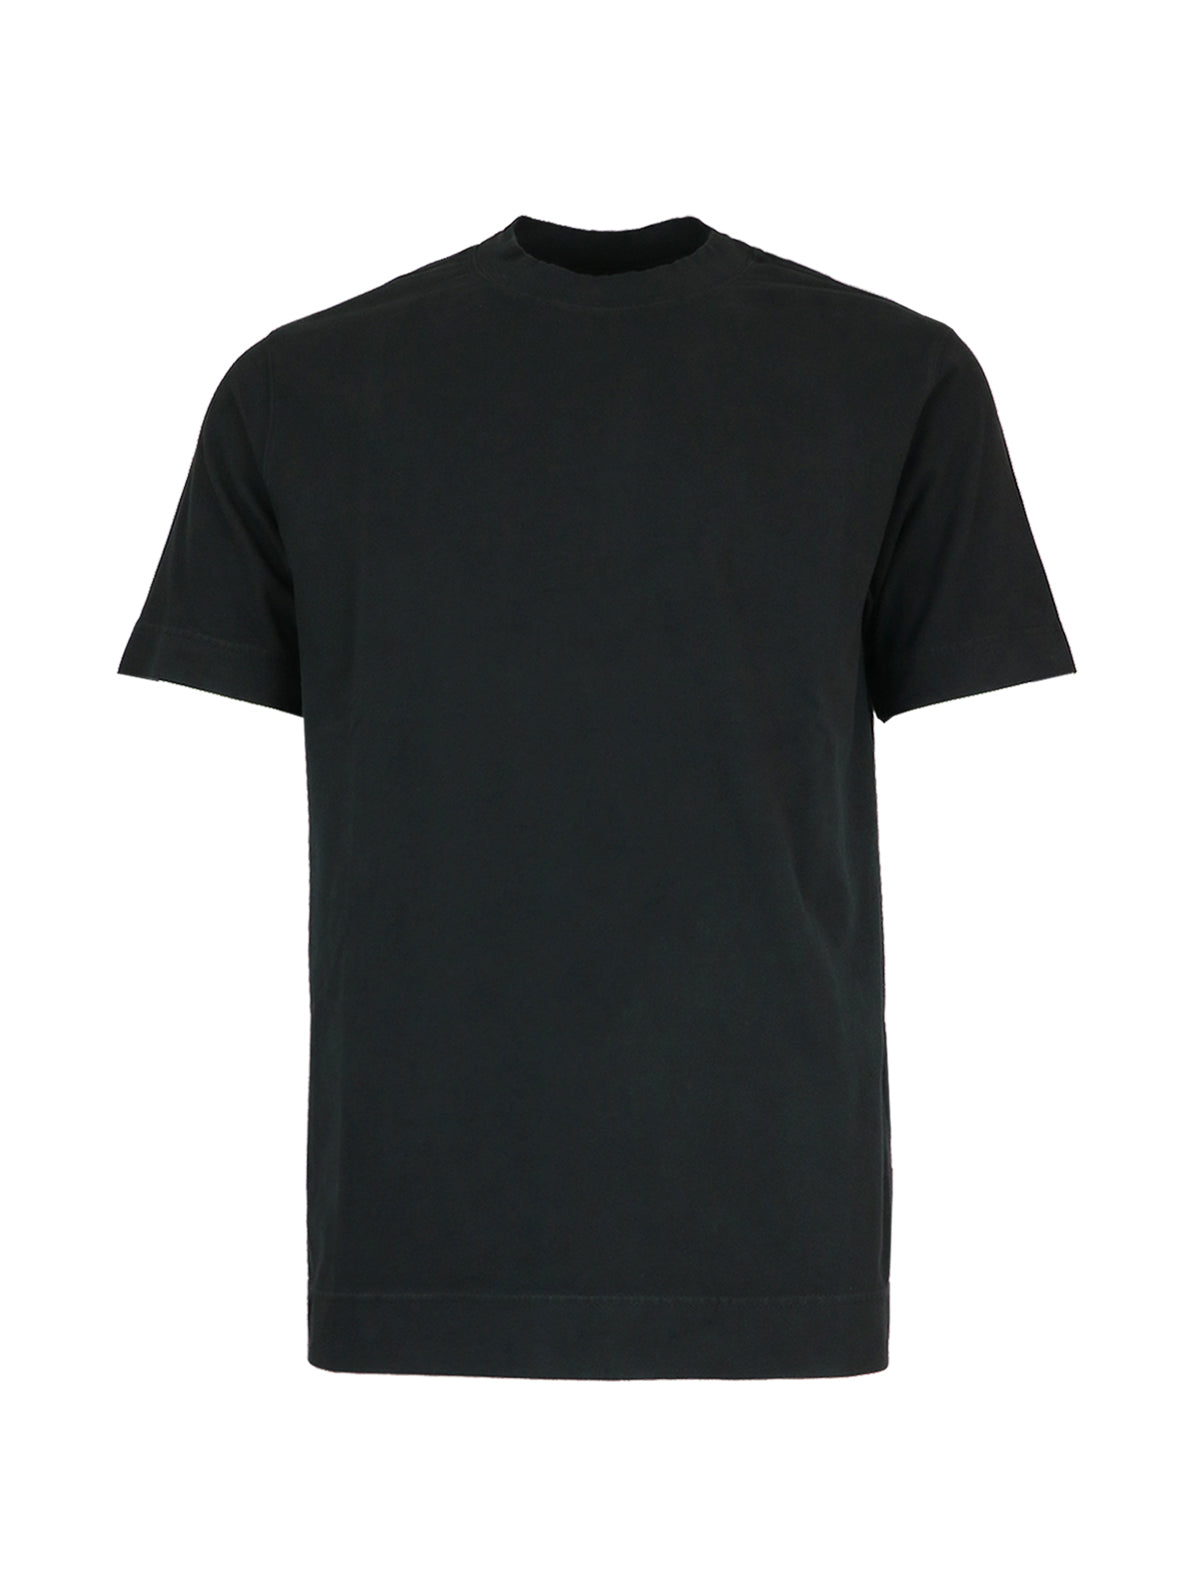 CIRCOLO 1901 Cotton-Stretch T-Shirt in Black